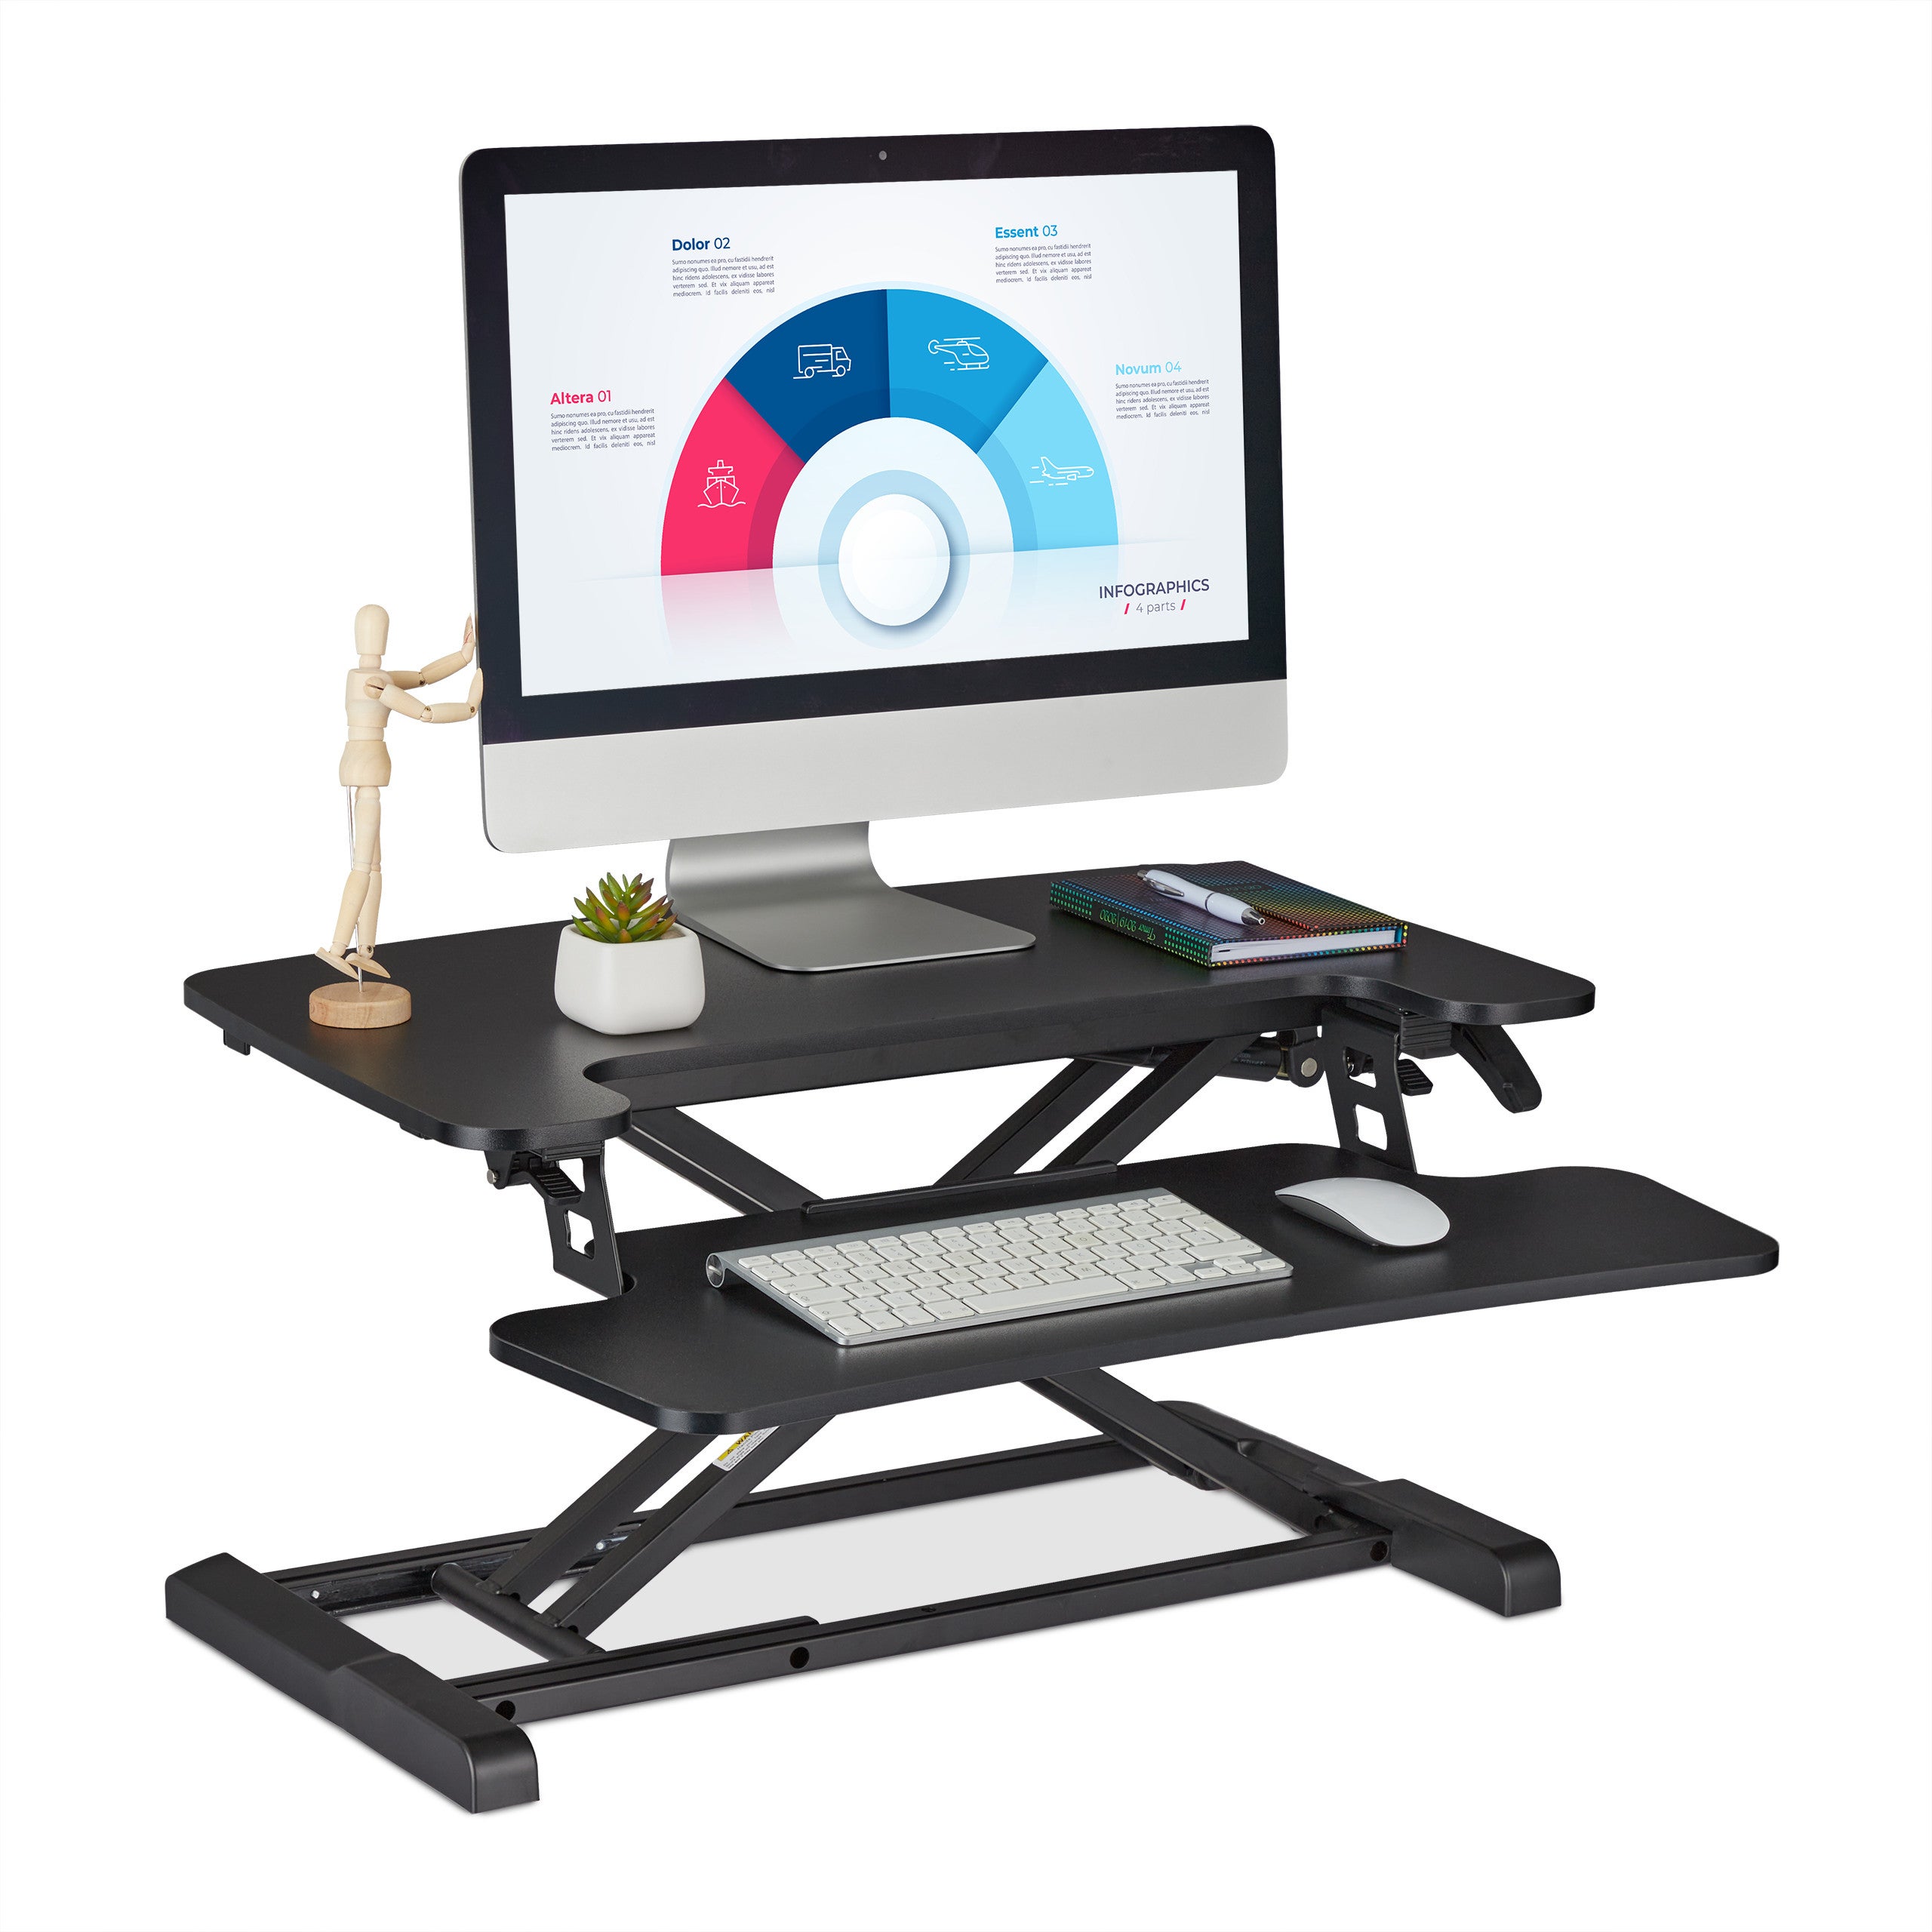 con ripiano per tastiera Basics Supporto per convertire una scrivania in uno standing desk regolabile in altezza 